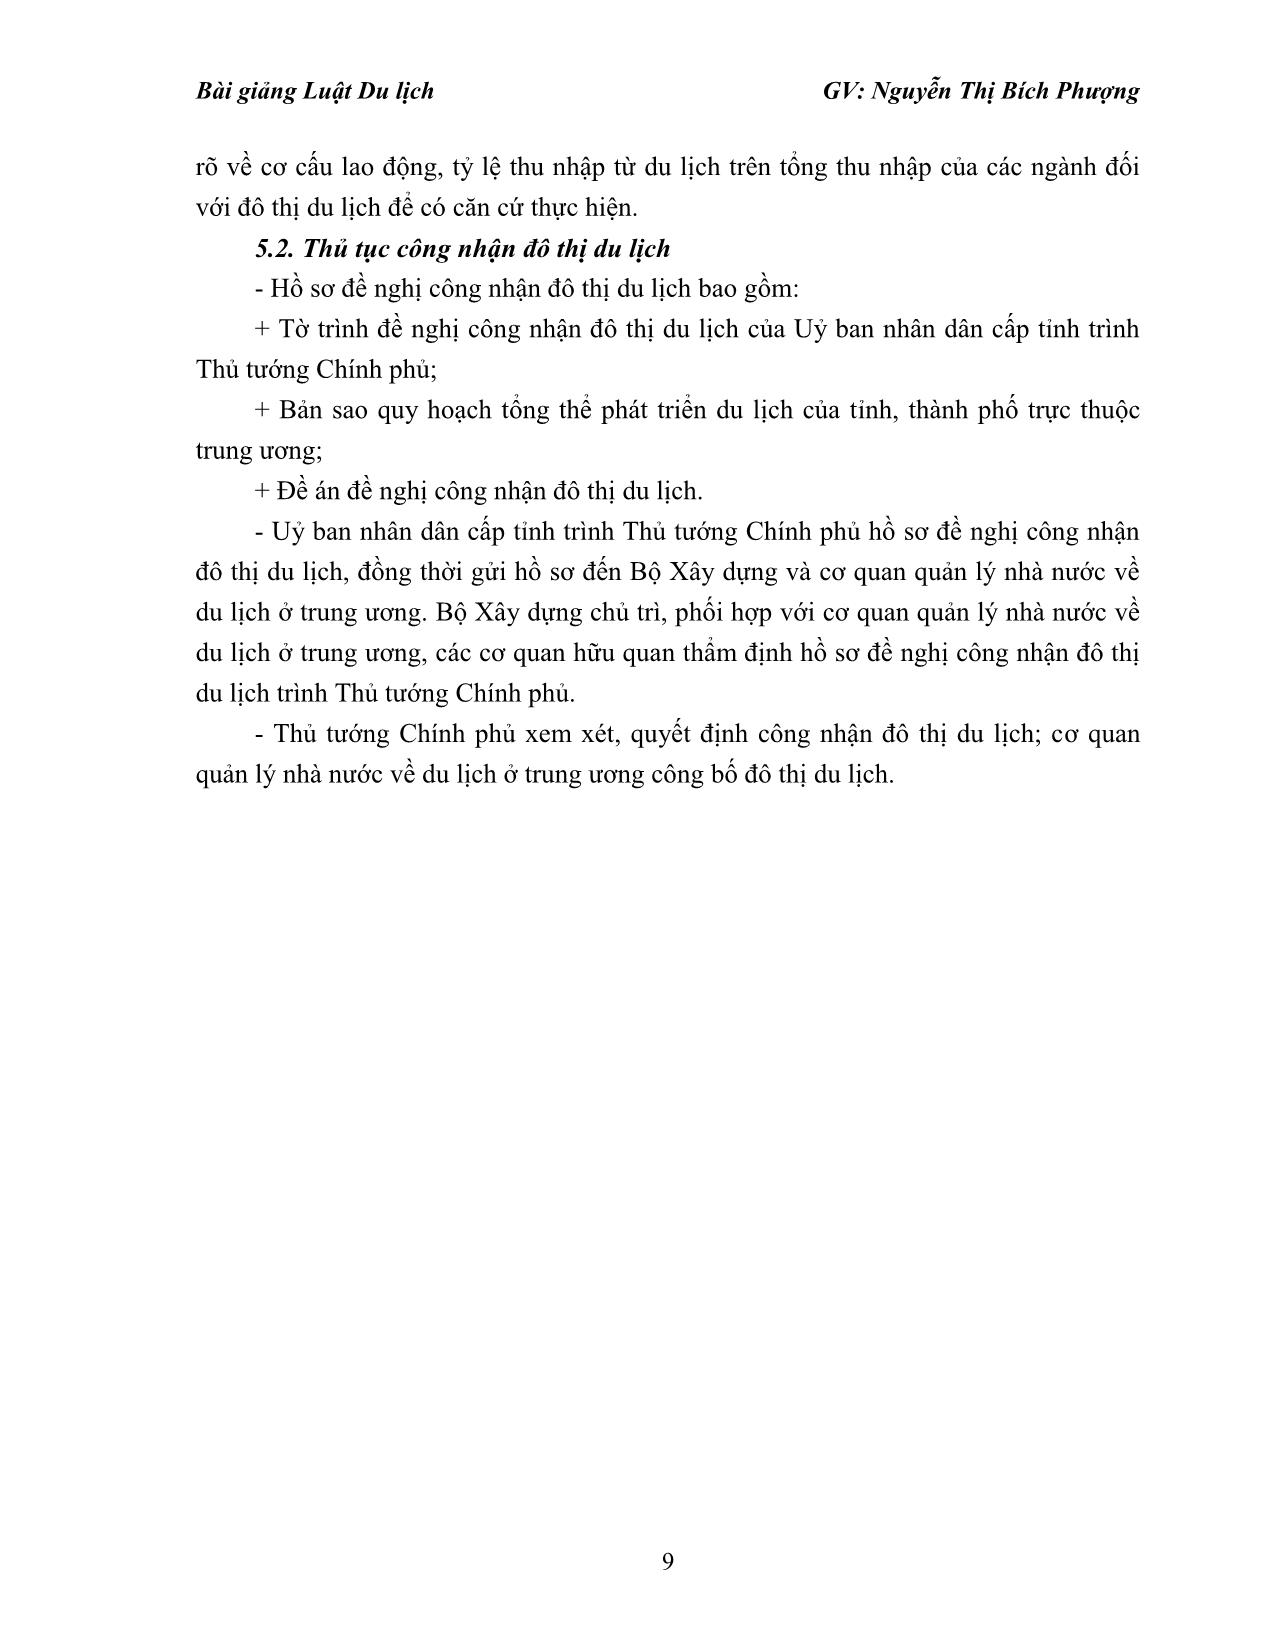 Bài giảng Luật du lịch - Nguyễn Thị Bích Phượng trang 9